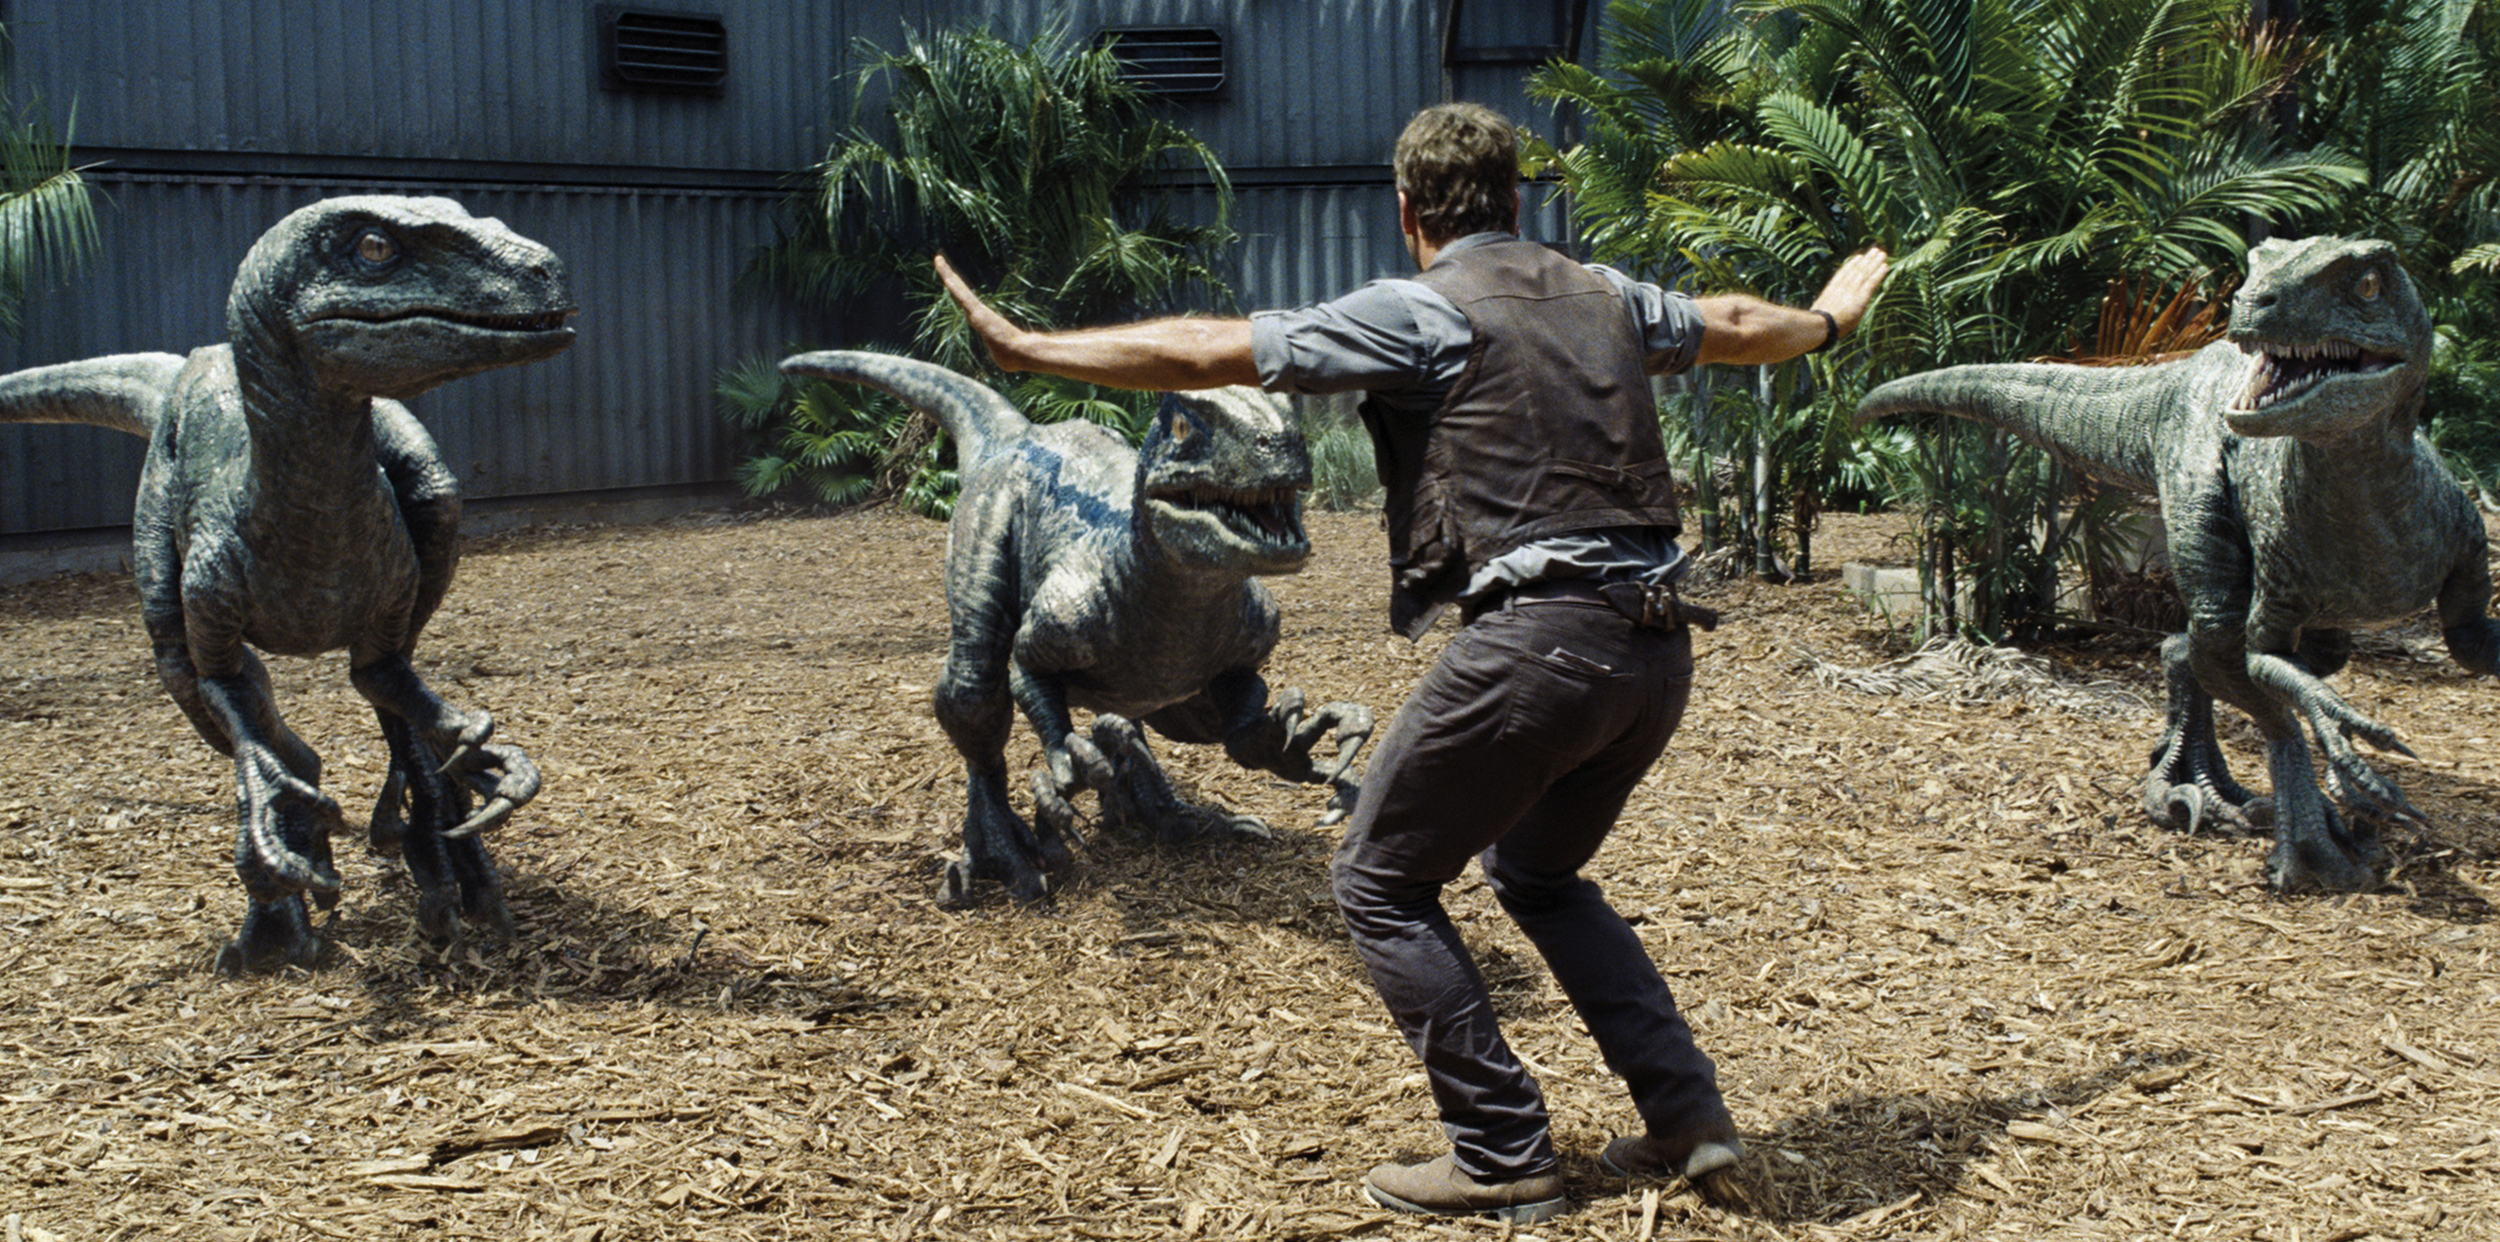 Így forgatták le a legújabb Jurassic World filmet - Blikk